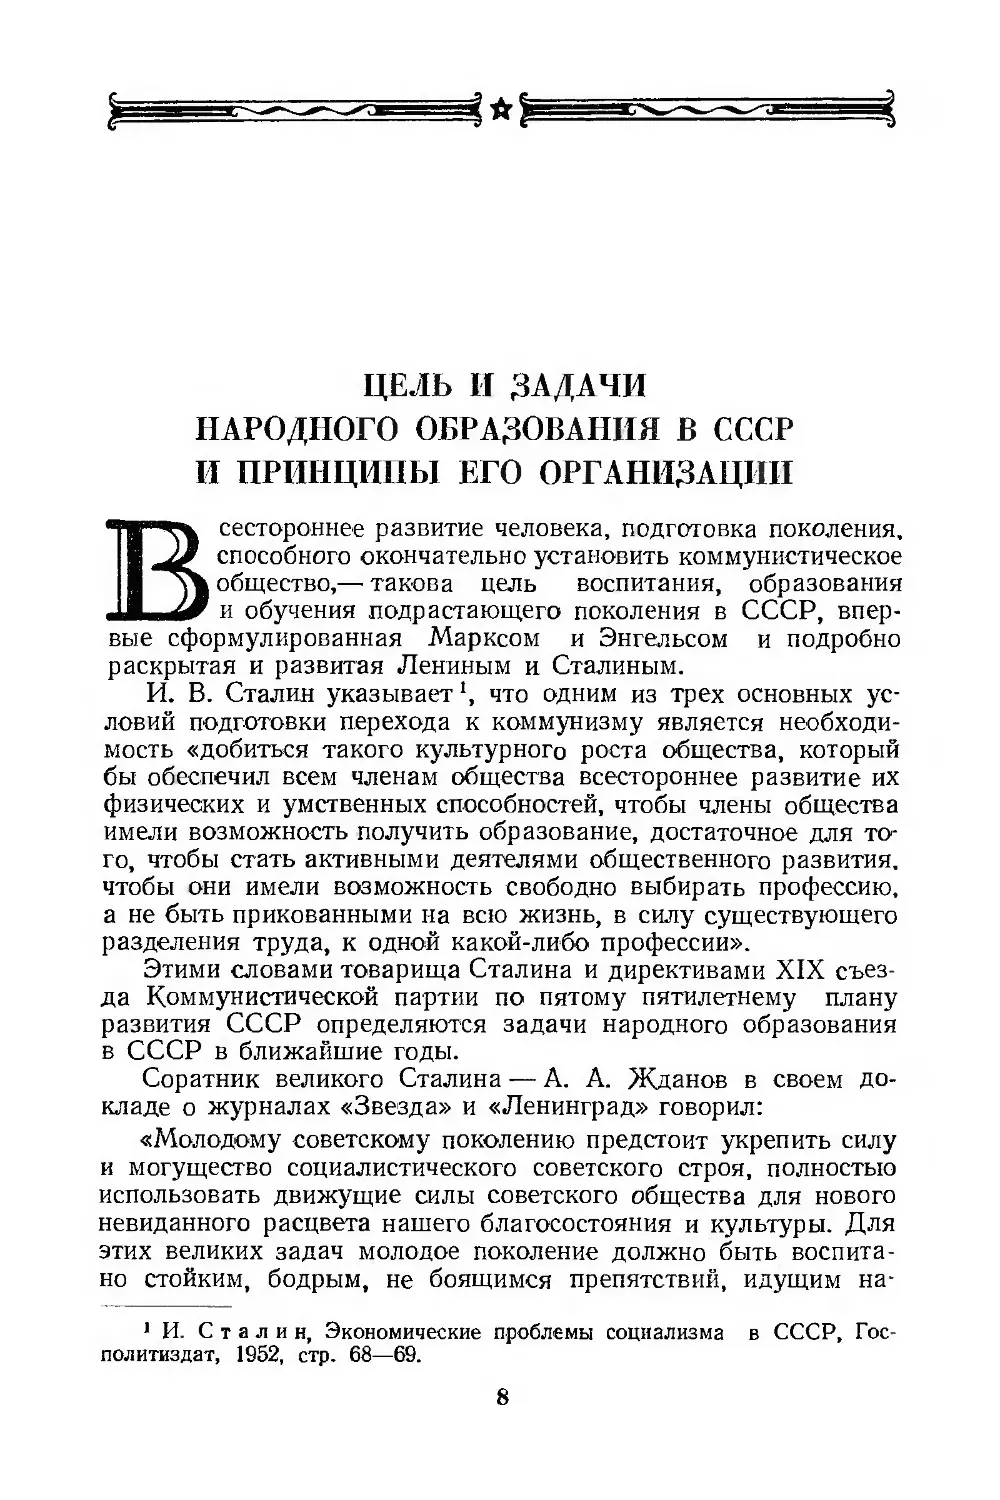 Цель и задачи народного образования в СССР и принципы его организации